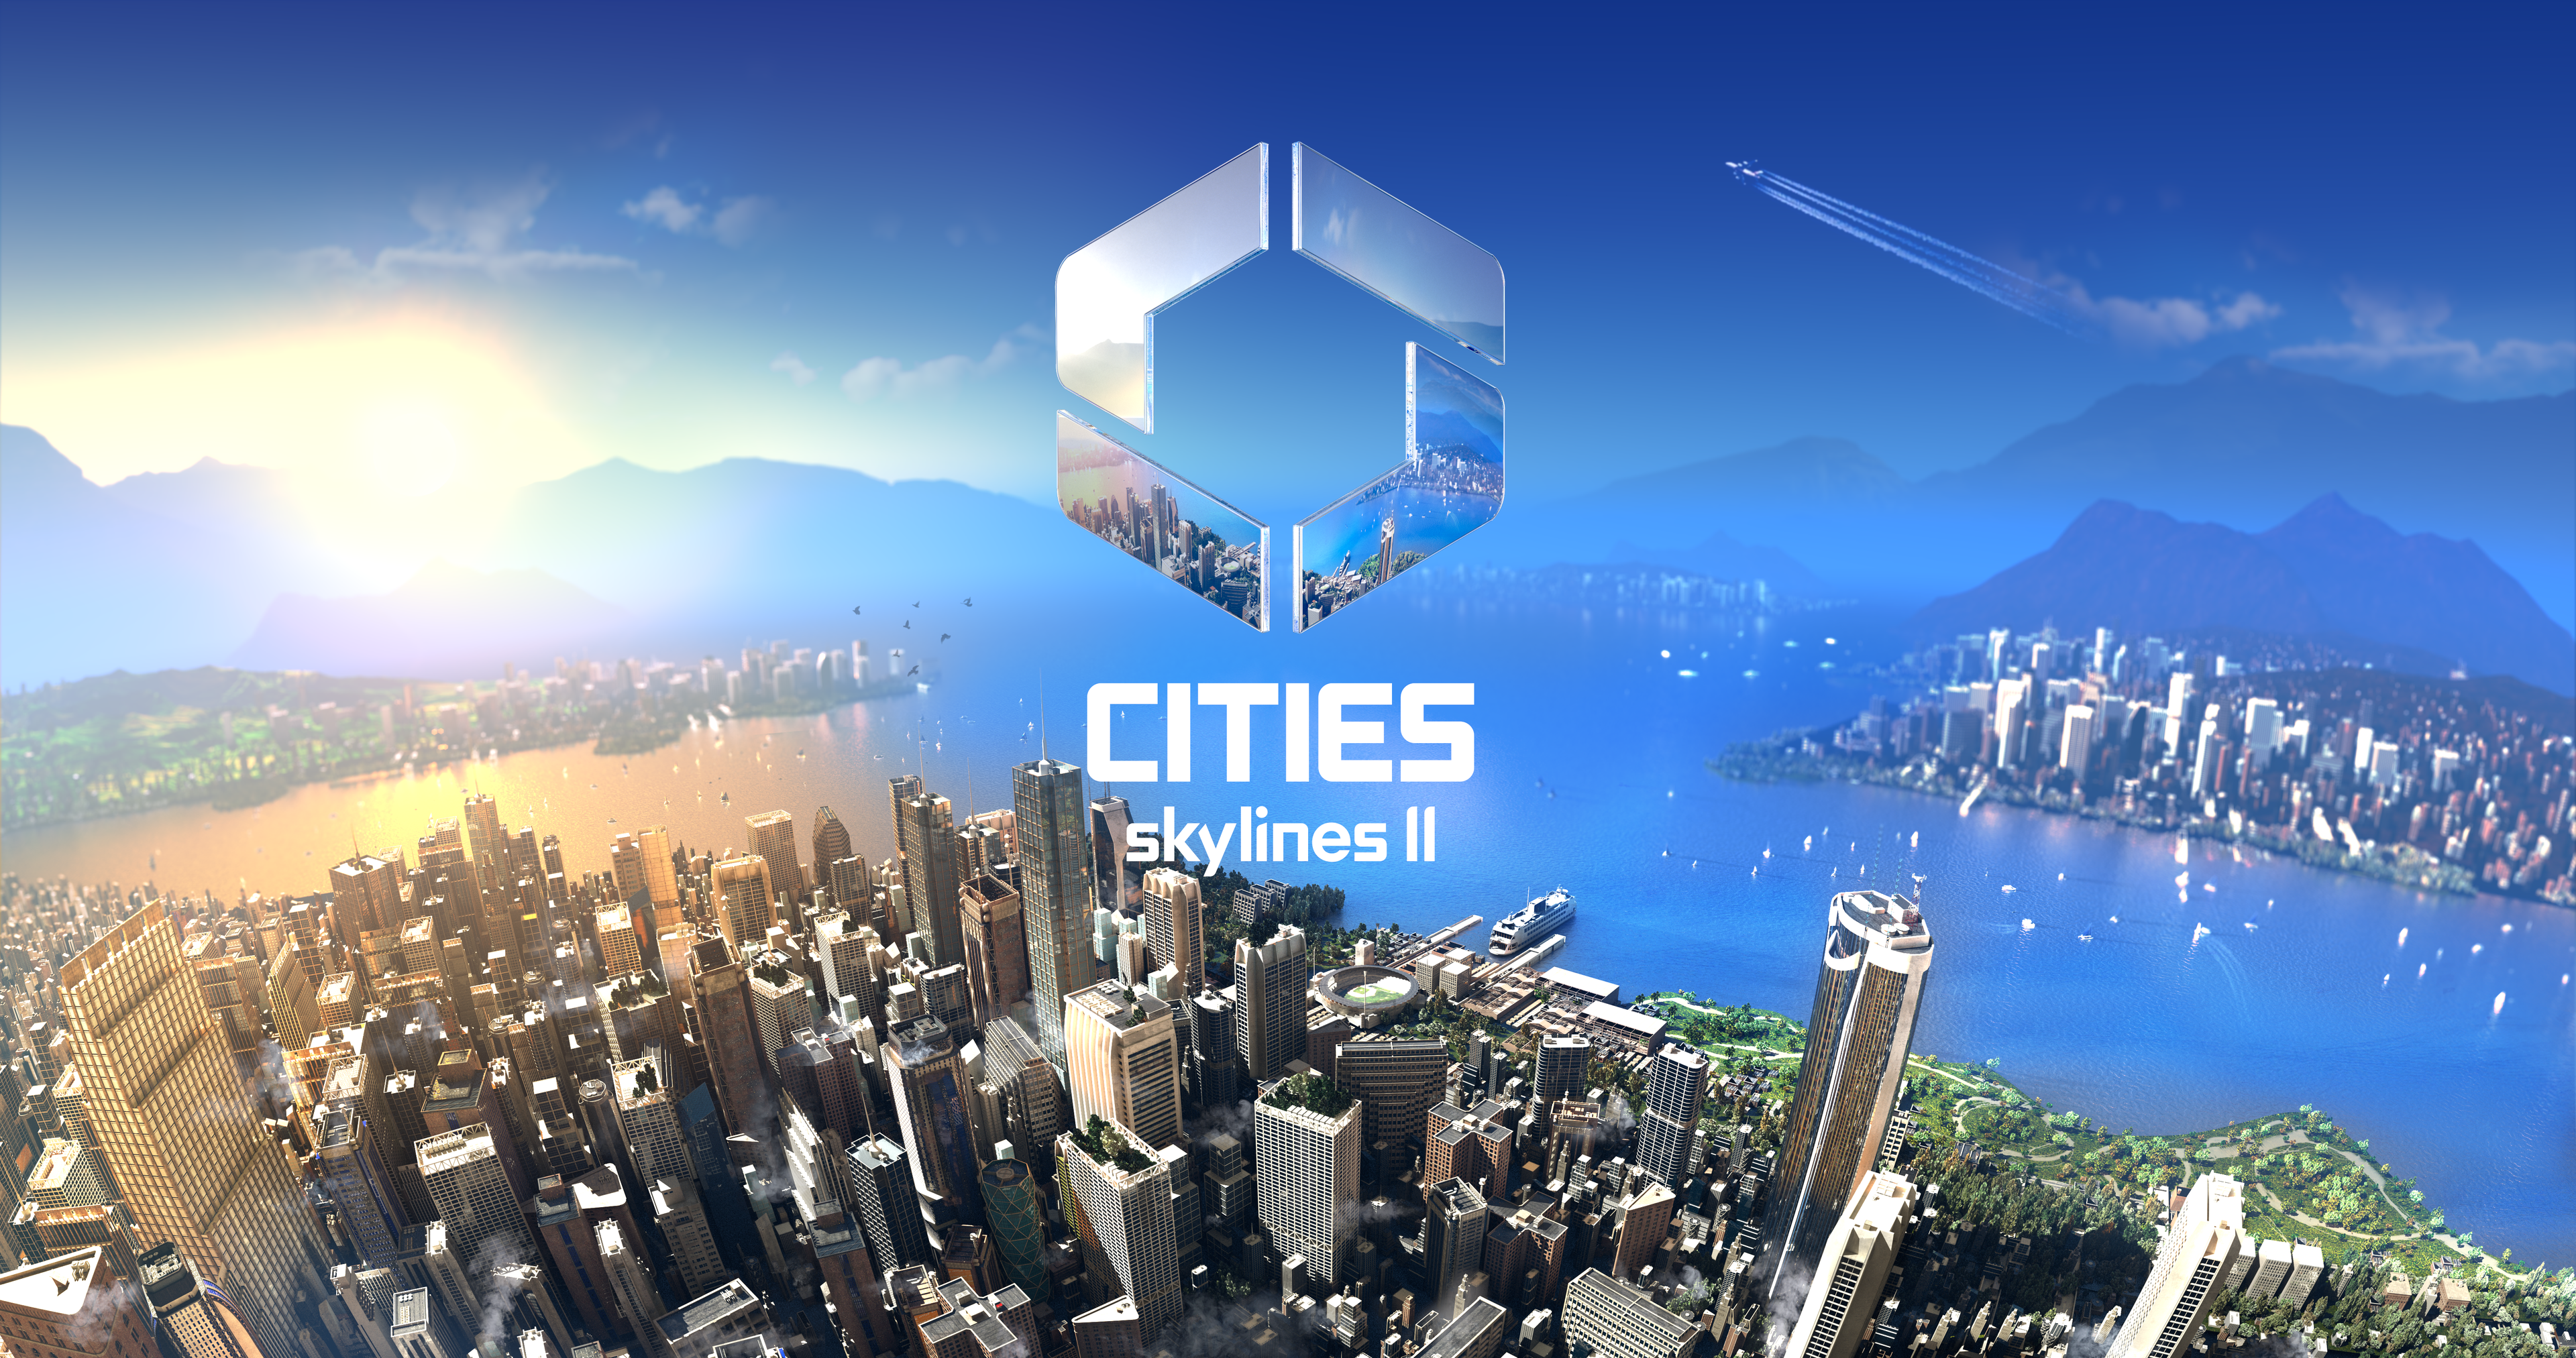 Collosal Order har "lært en masse" af feedback fra Cities Skylines-fællesskabet